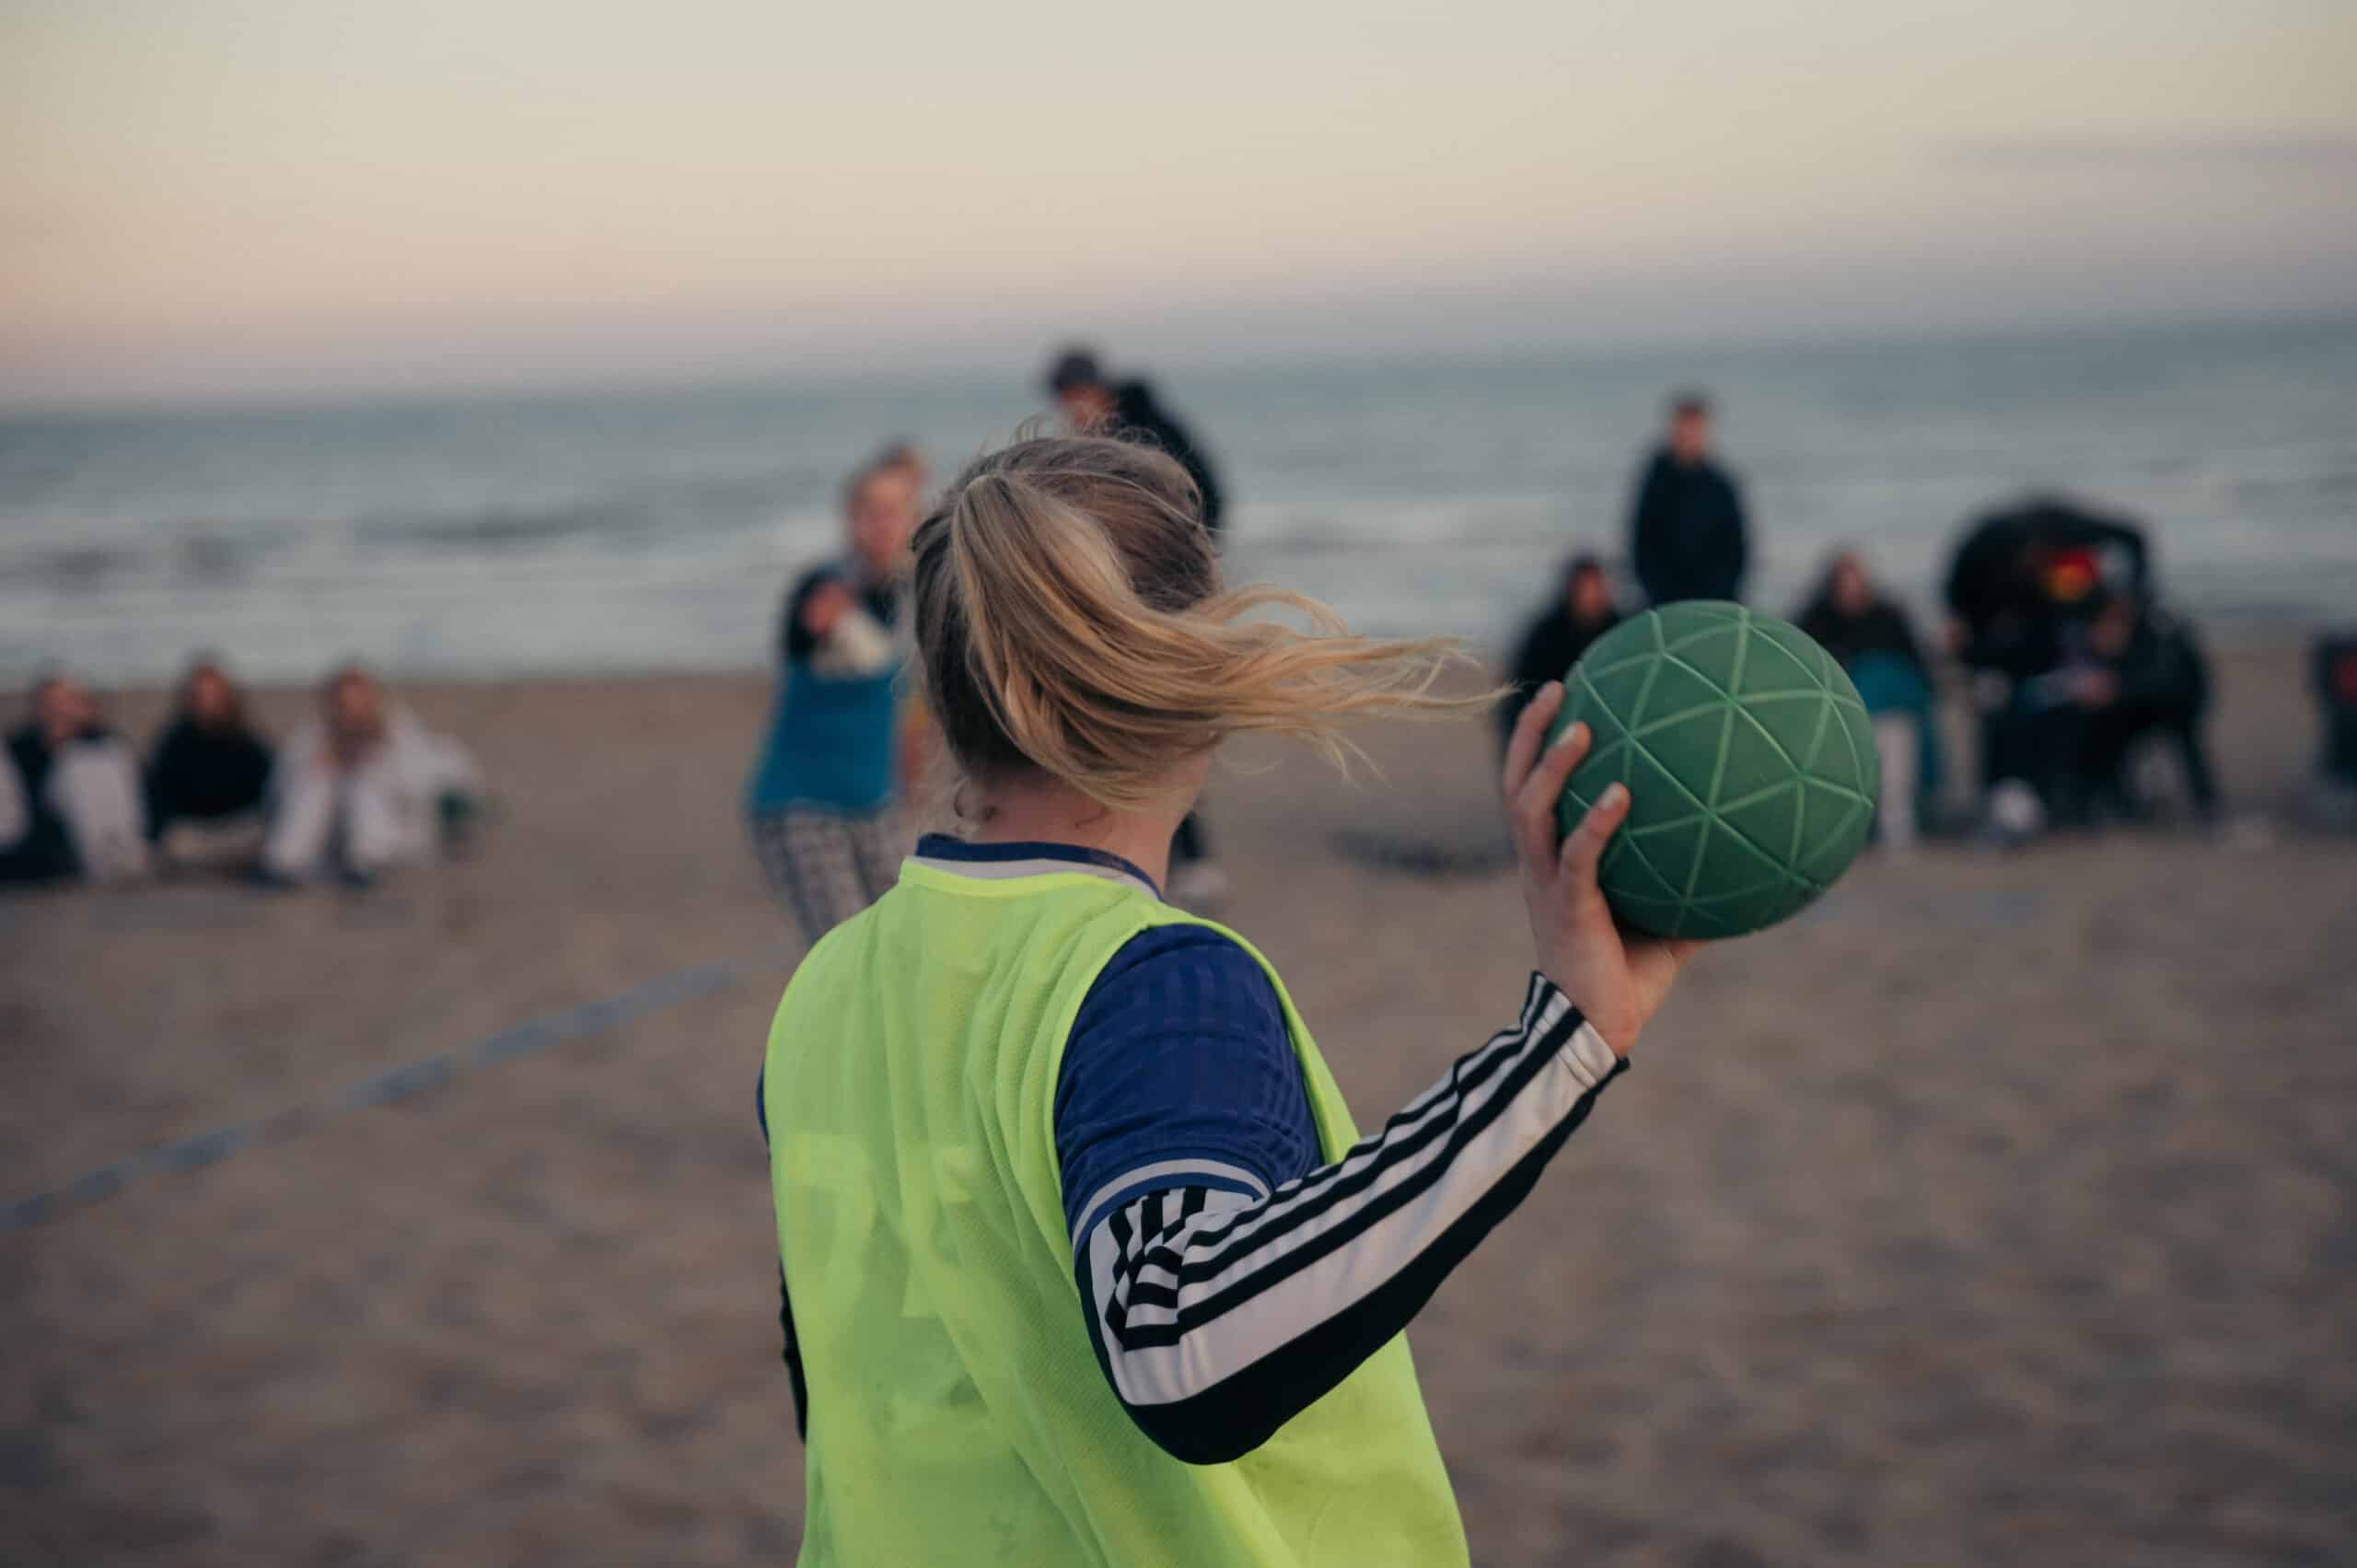 C'est parti ! Soleil - plage - beach handball que demander de plus. ☀️🏝🤾‍♂️